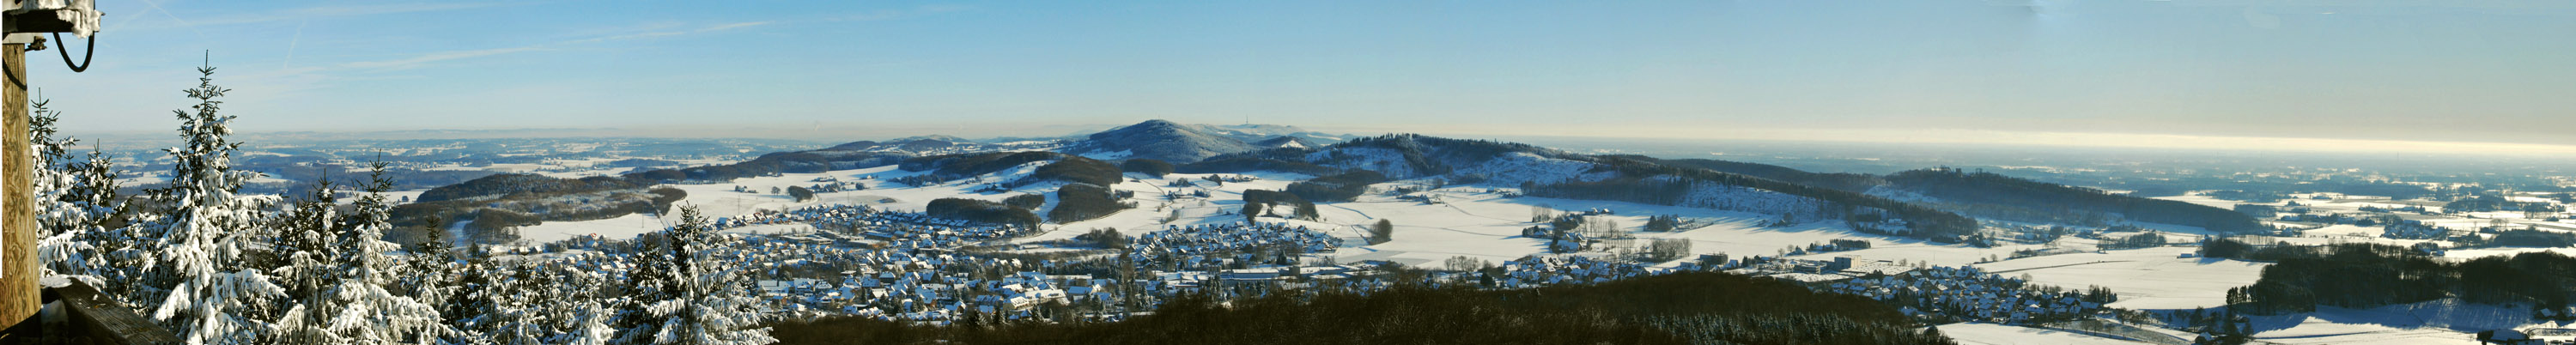 Teutoburger Wald nördlicher Kreis Gütersloh im Winter (1)